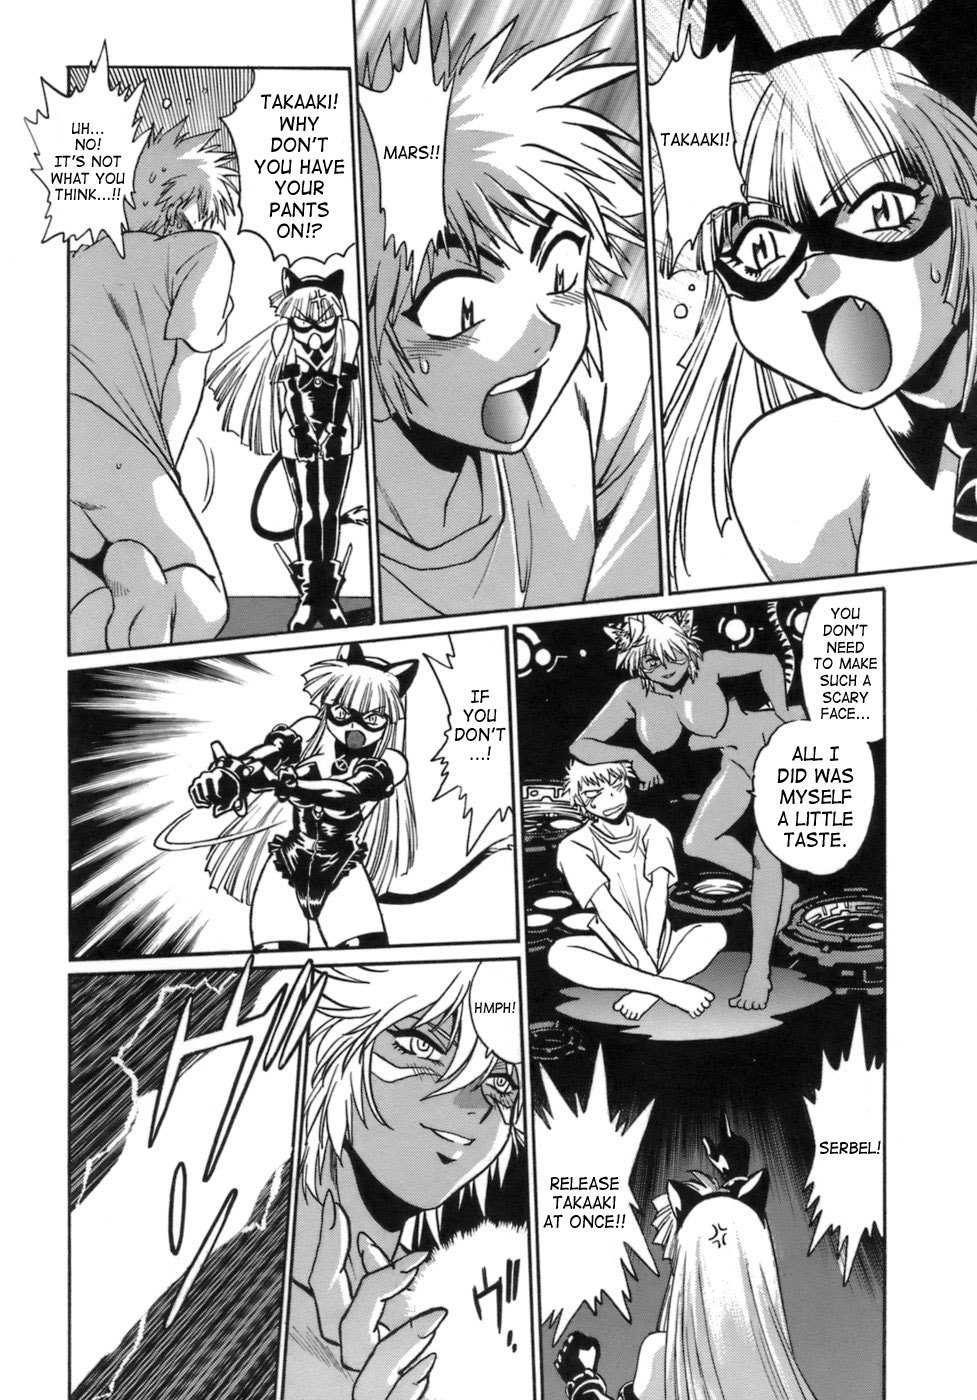 Tail Chaser Vol.1 153 hentai manga